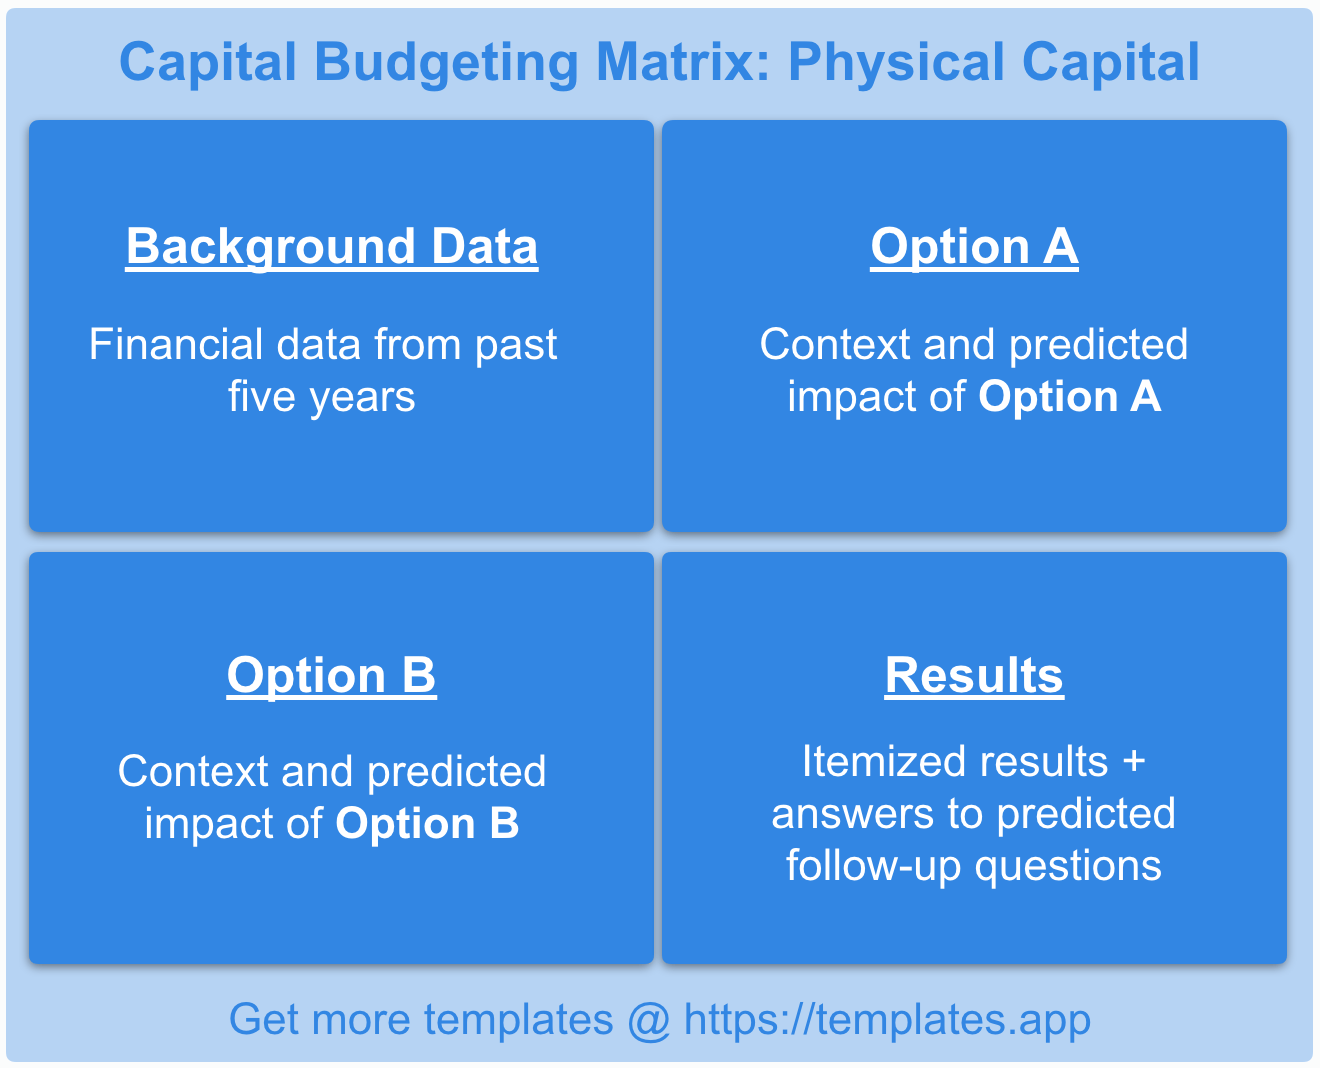 Tax Law Capital Budgeting Matrix by templates.app